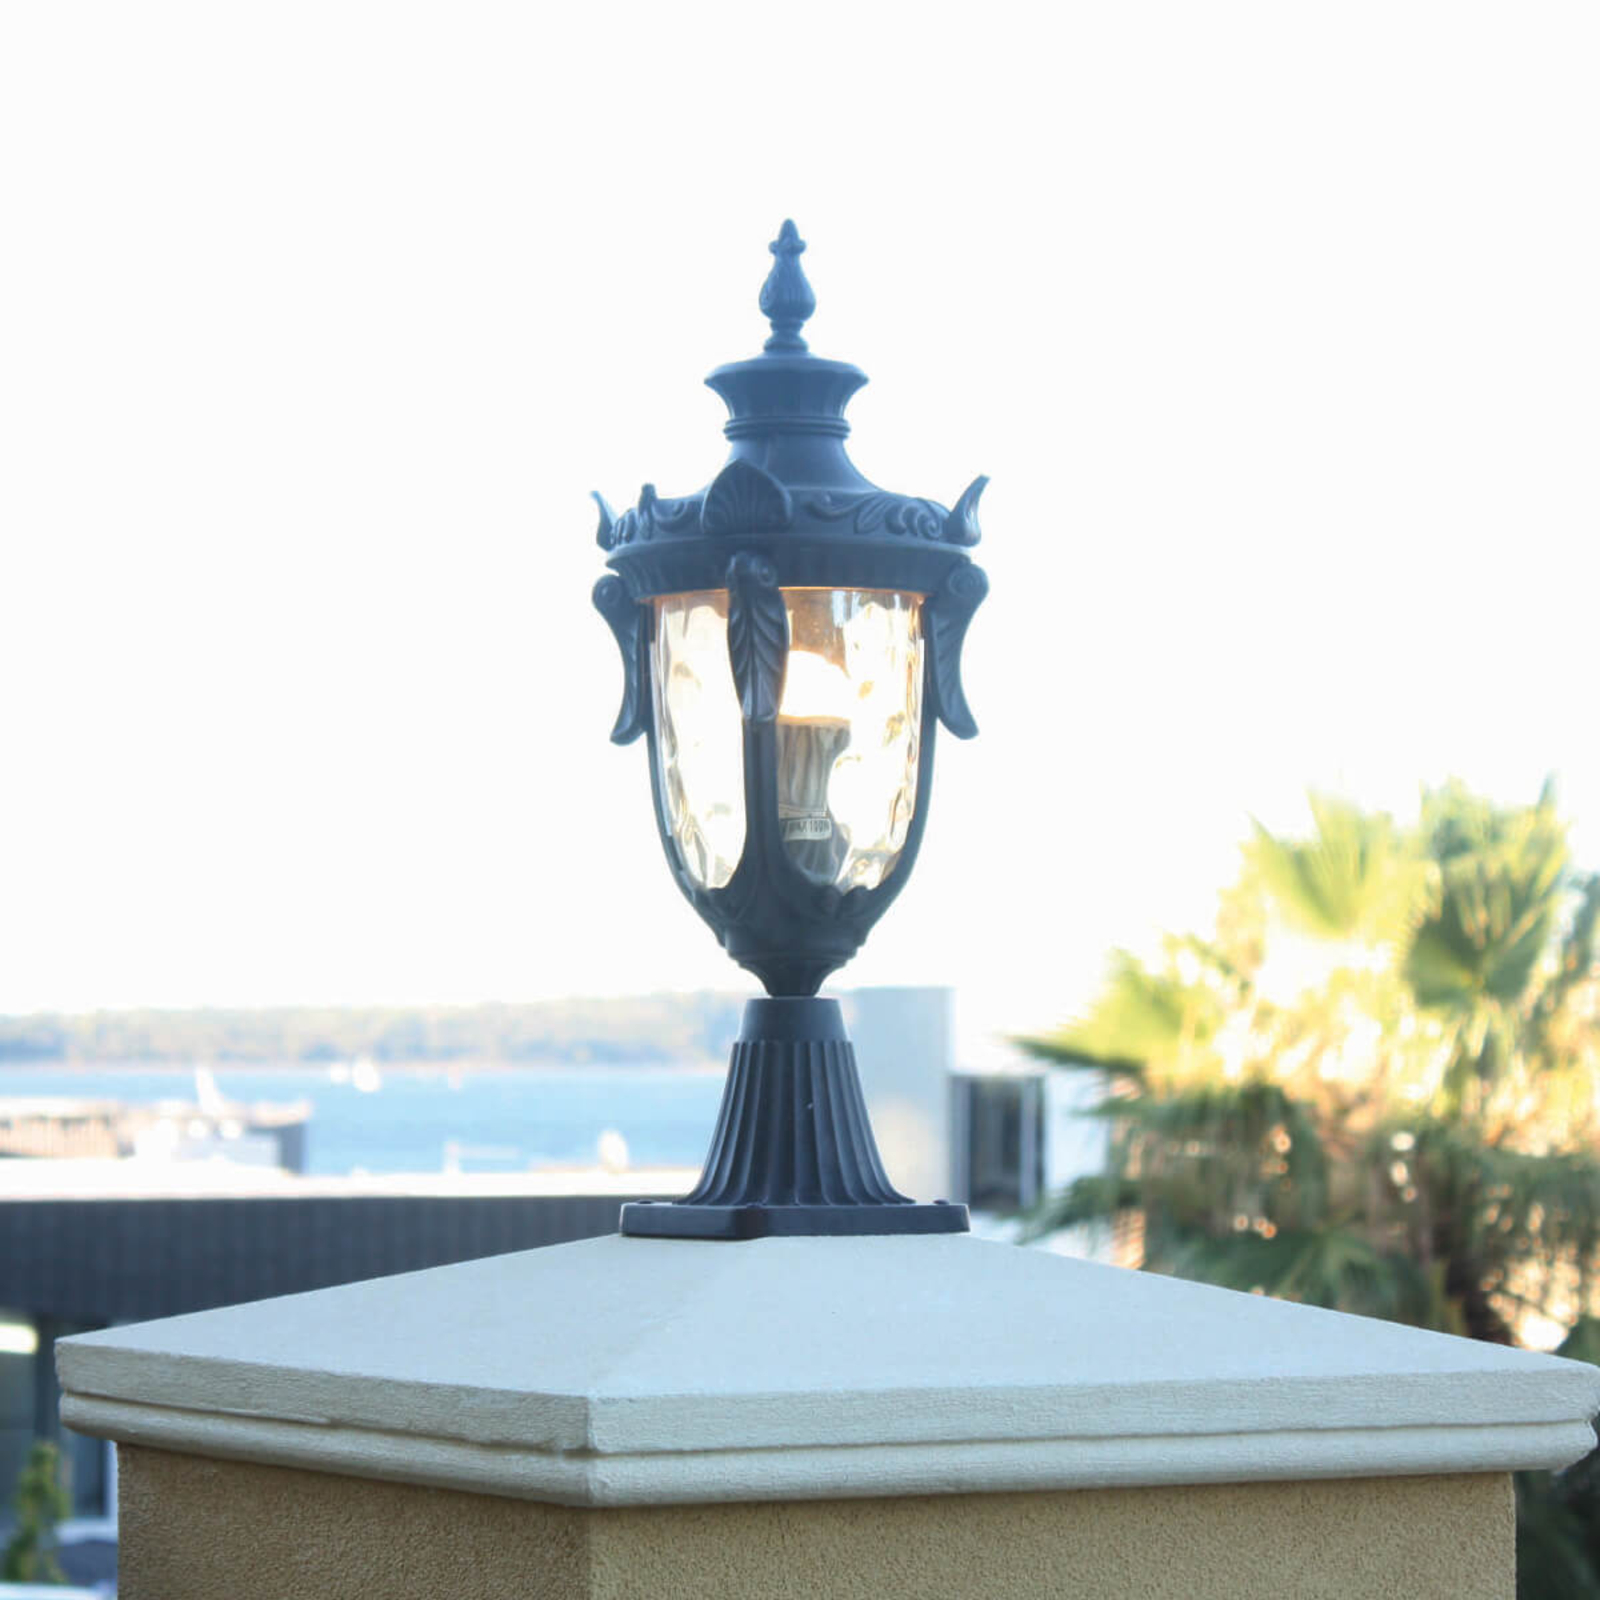 Philadelphia Pillar Light in a Historical Design